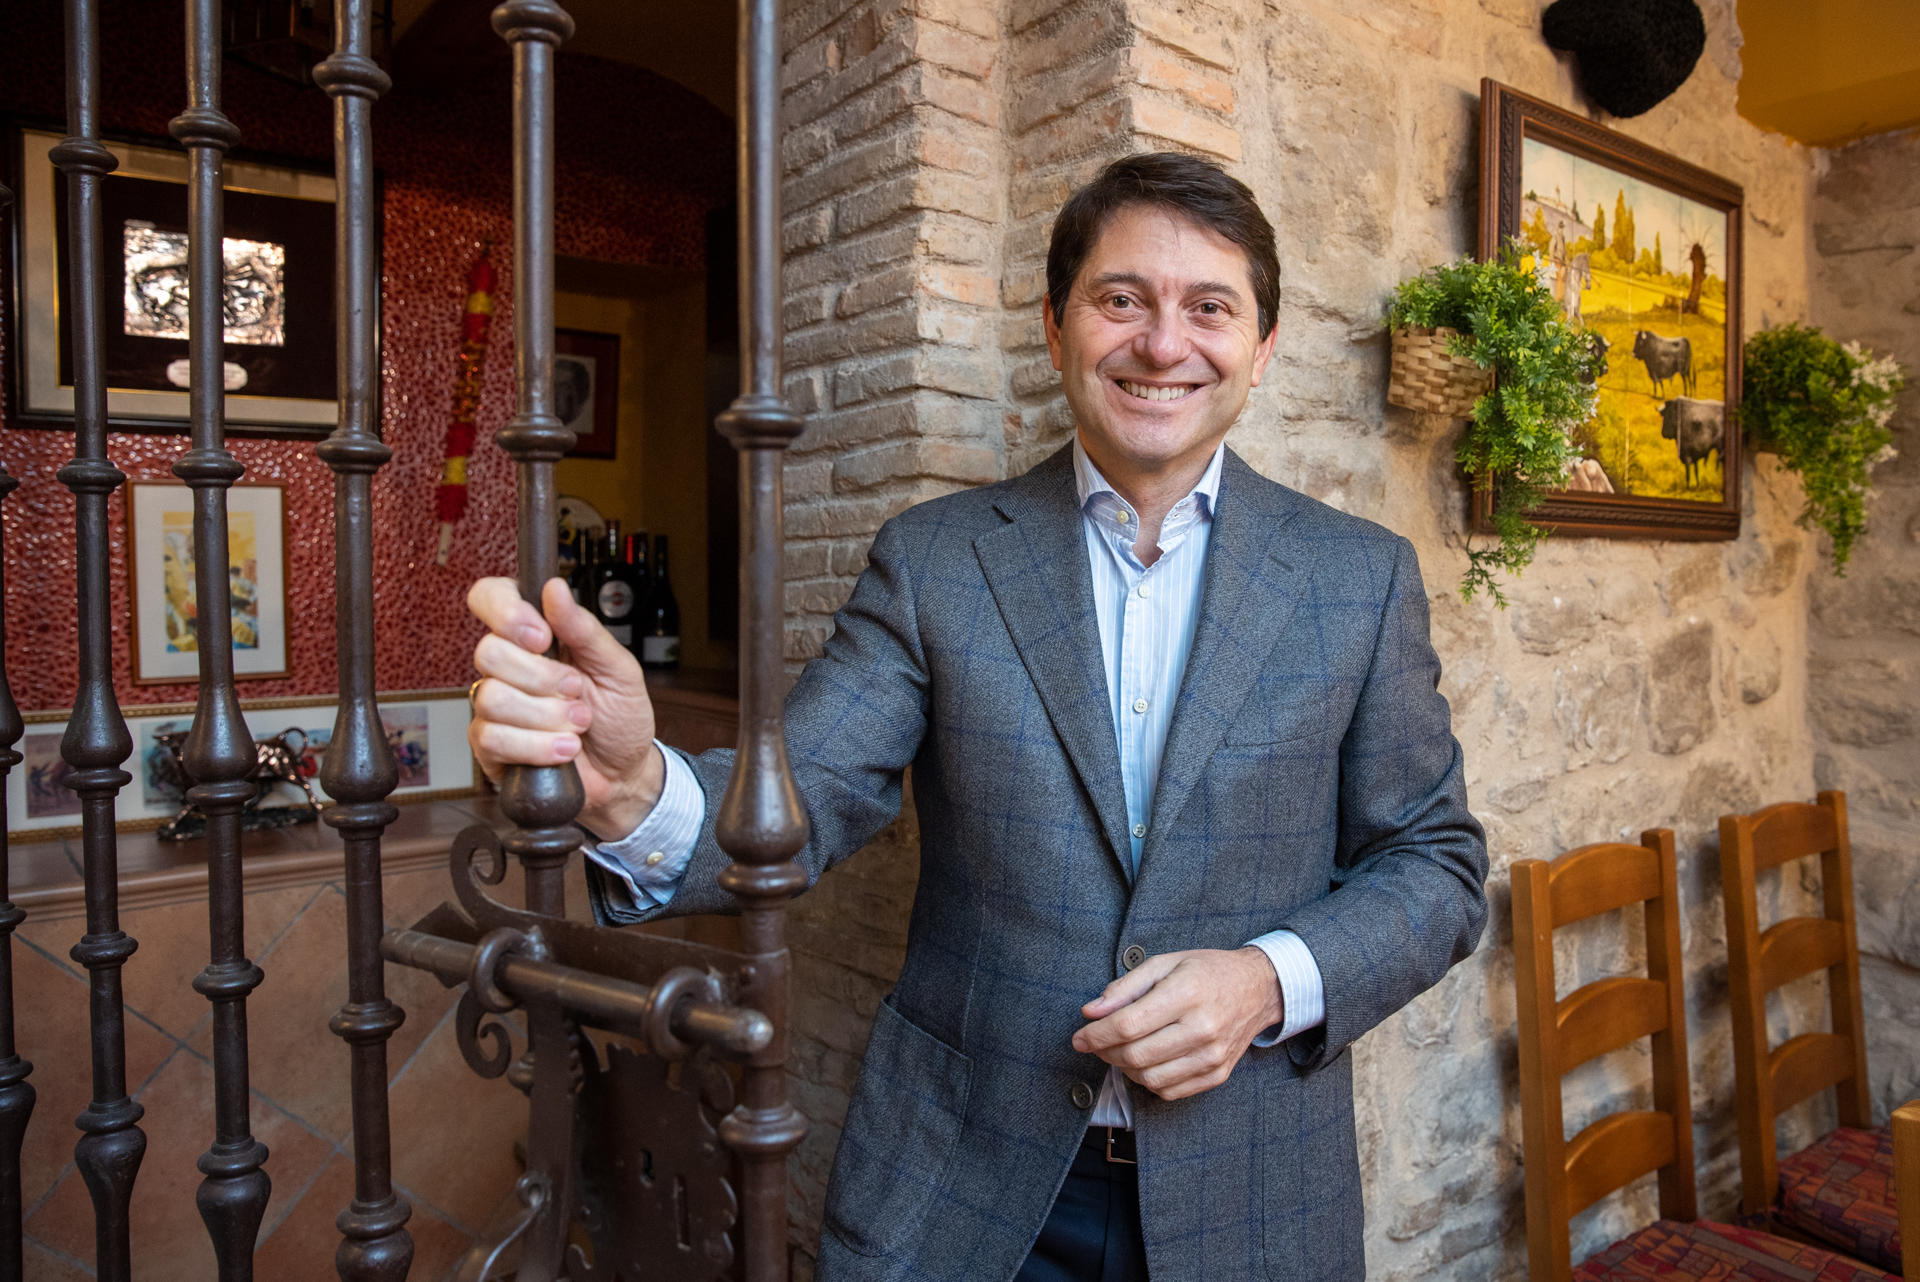 El presidente de la Academia Riojana de Gastronomía, Pedro Barrio, en una entrevista a EFE, ha asegurado que La Rioja no ha tocado techo" en la concesión de reconocimientos gastronómicos como las estrellas Michelin, gracias a cocineros que realizan un trabajo de "altísimo nivel". EFE/Raquel Manzanares